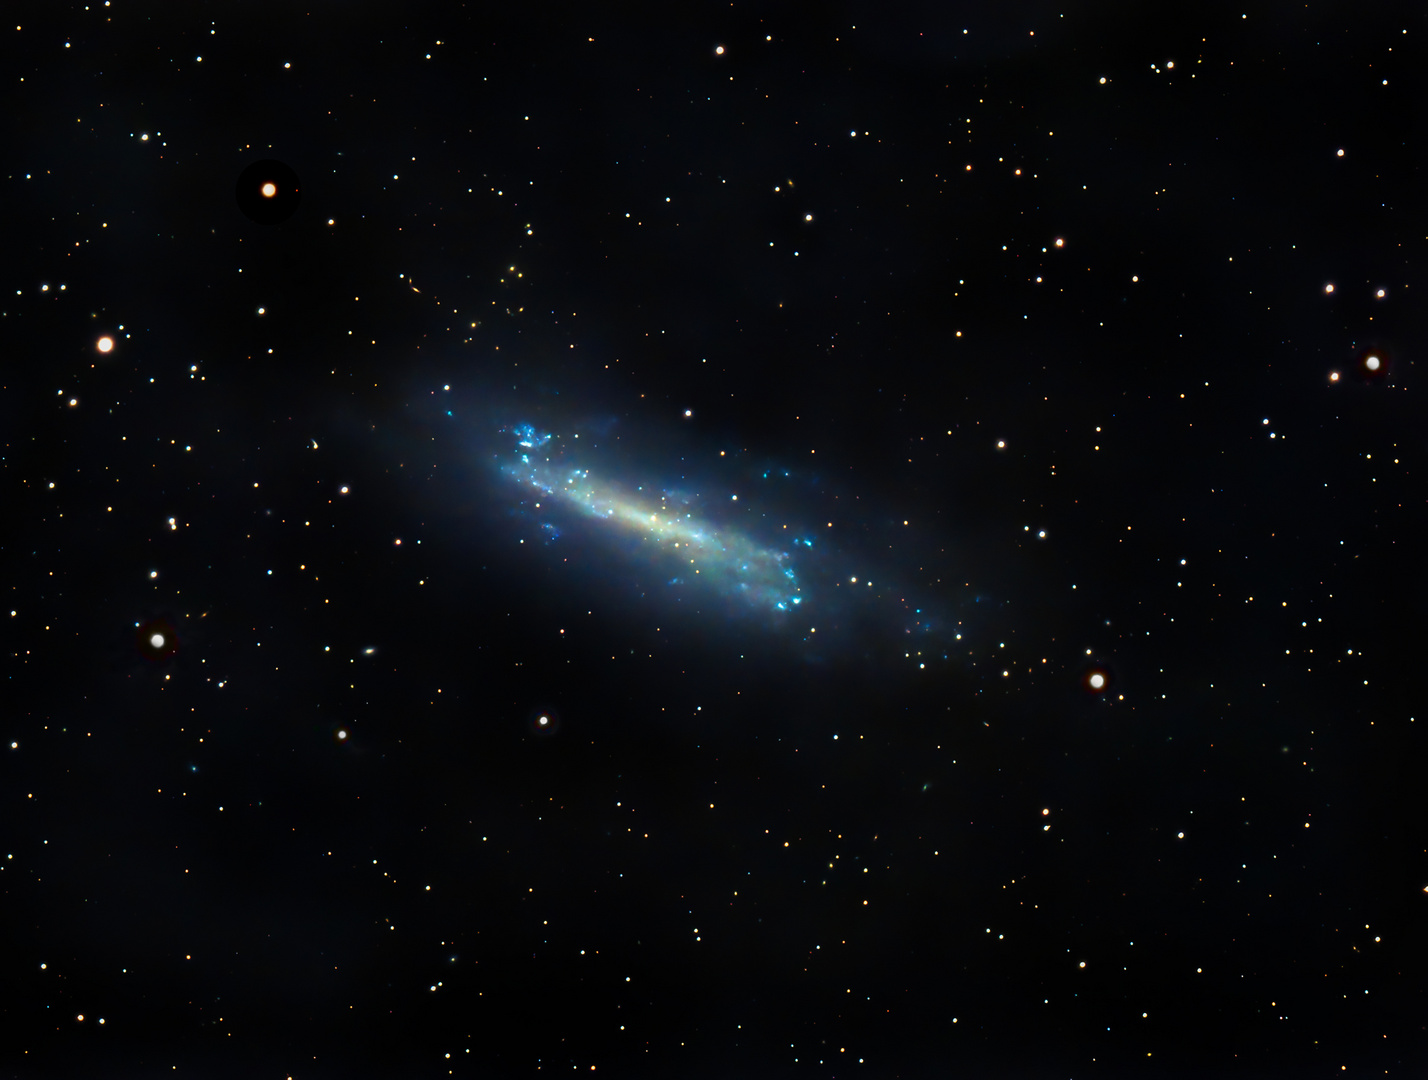 NGC4236 - Die Draco Galaxie